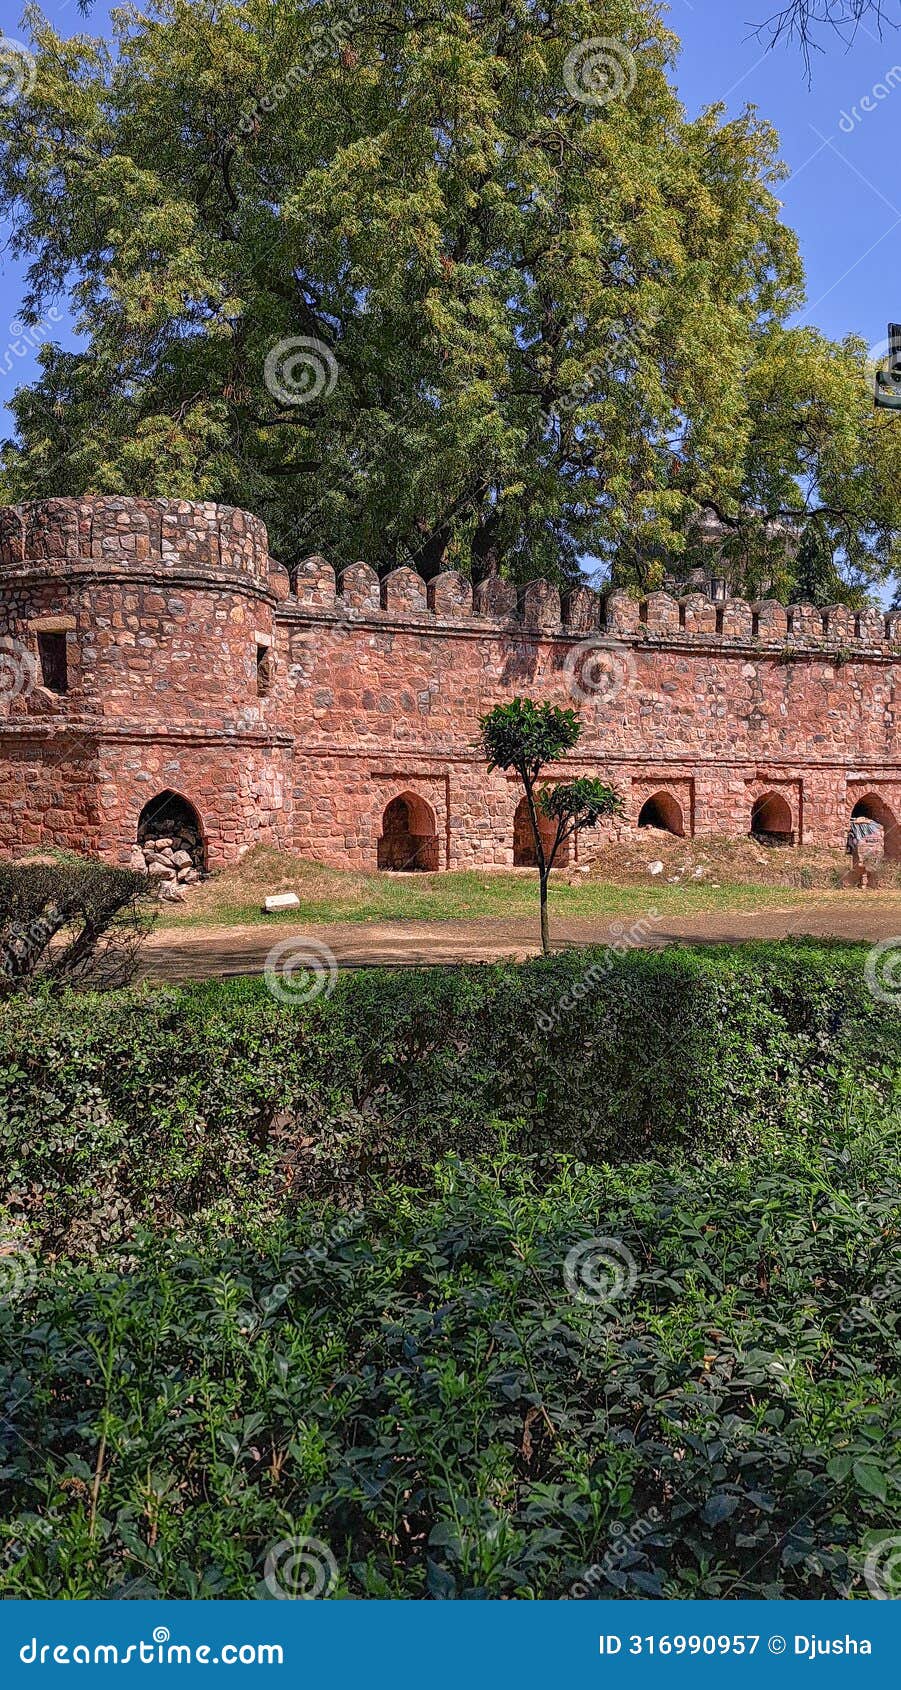 ancient fortress wall, bastion, citadel. ramparts, battlements, arched recesses. mausoleum sikandar lodi tomb, delhi